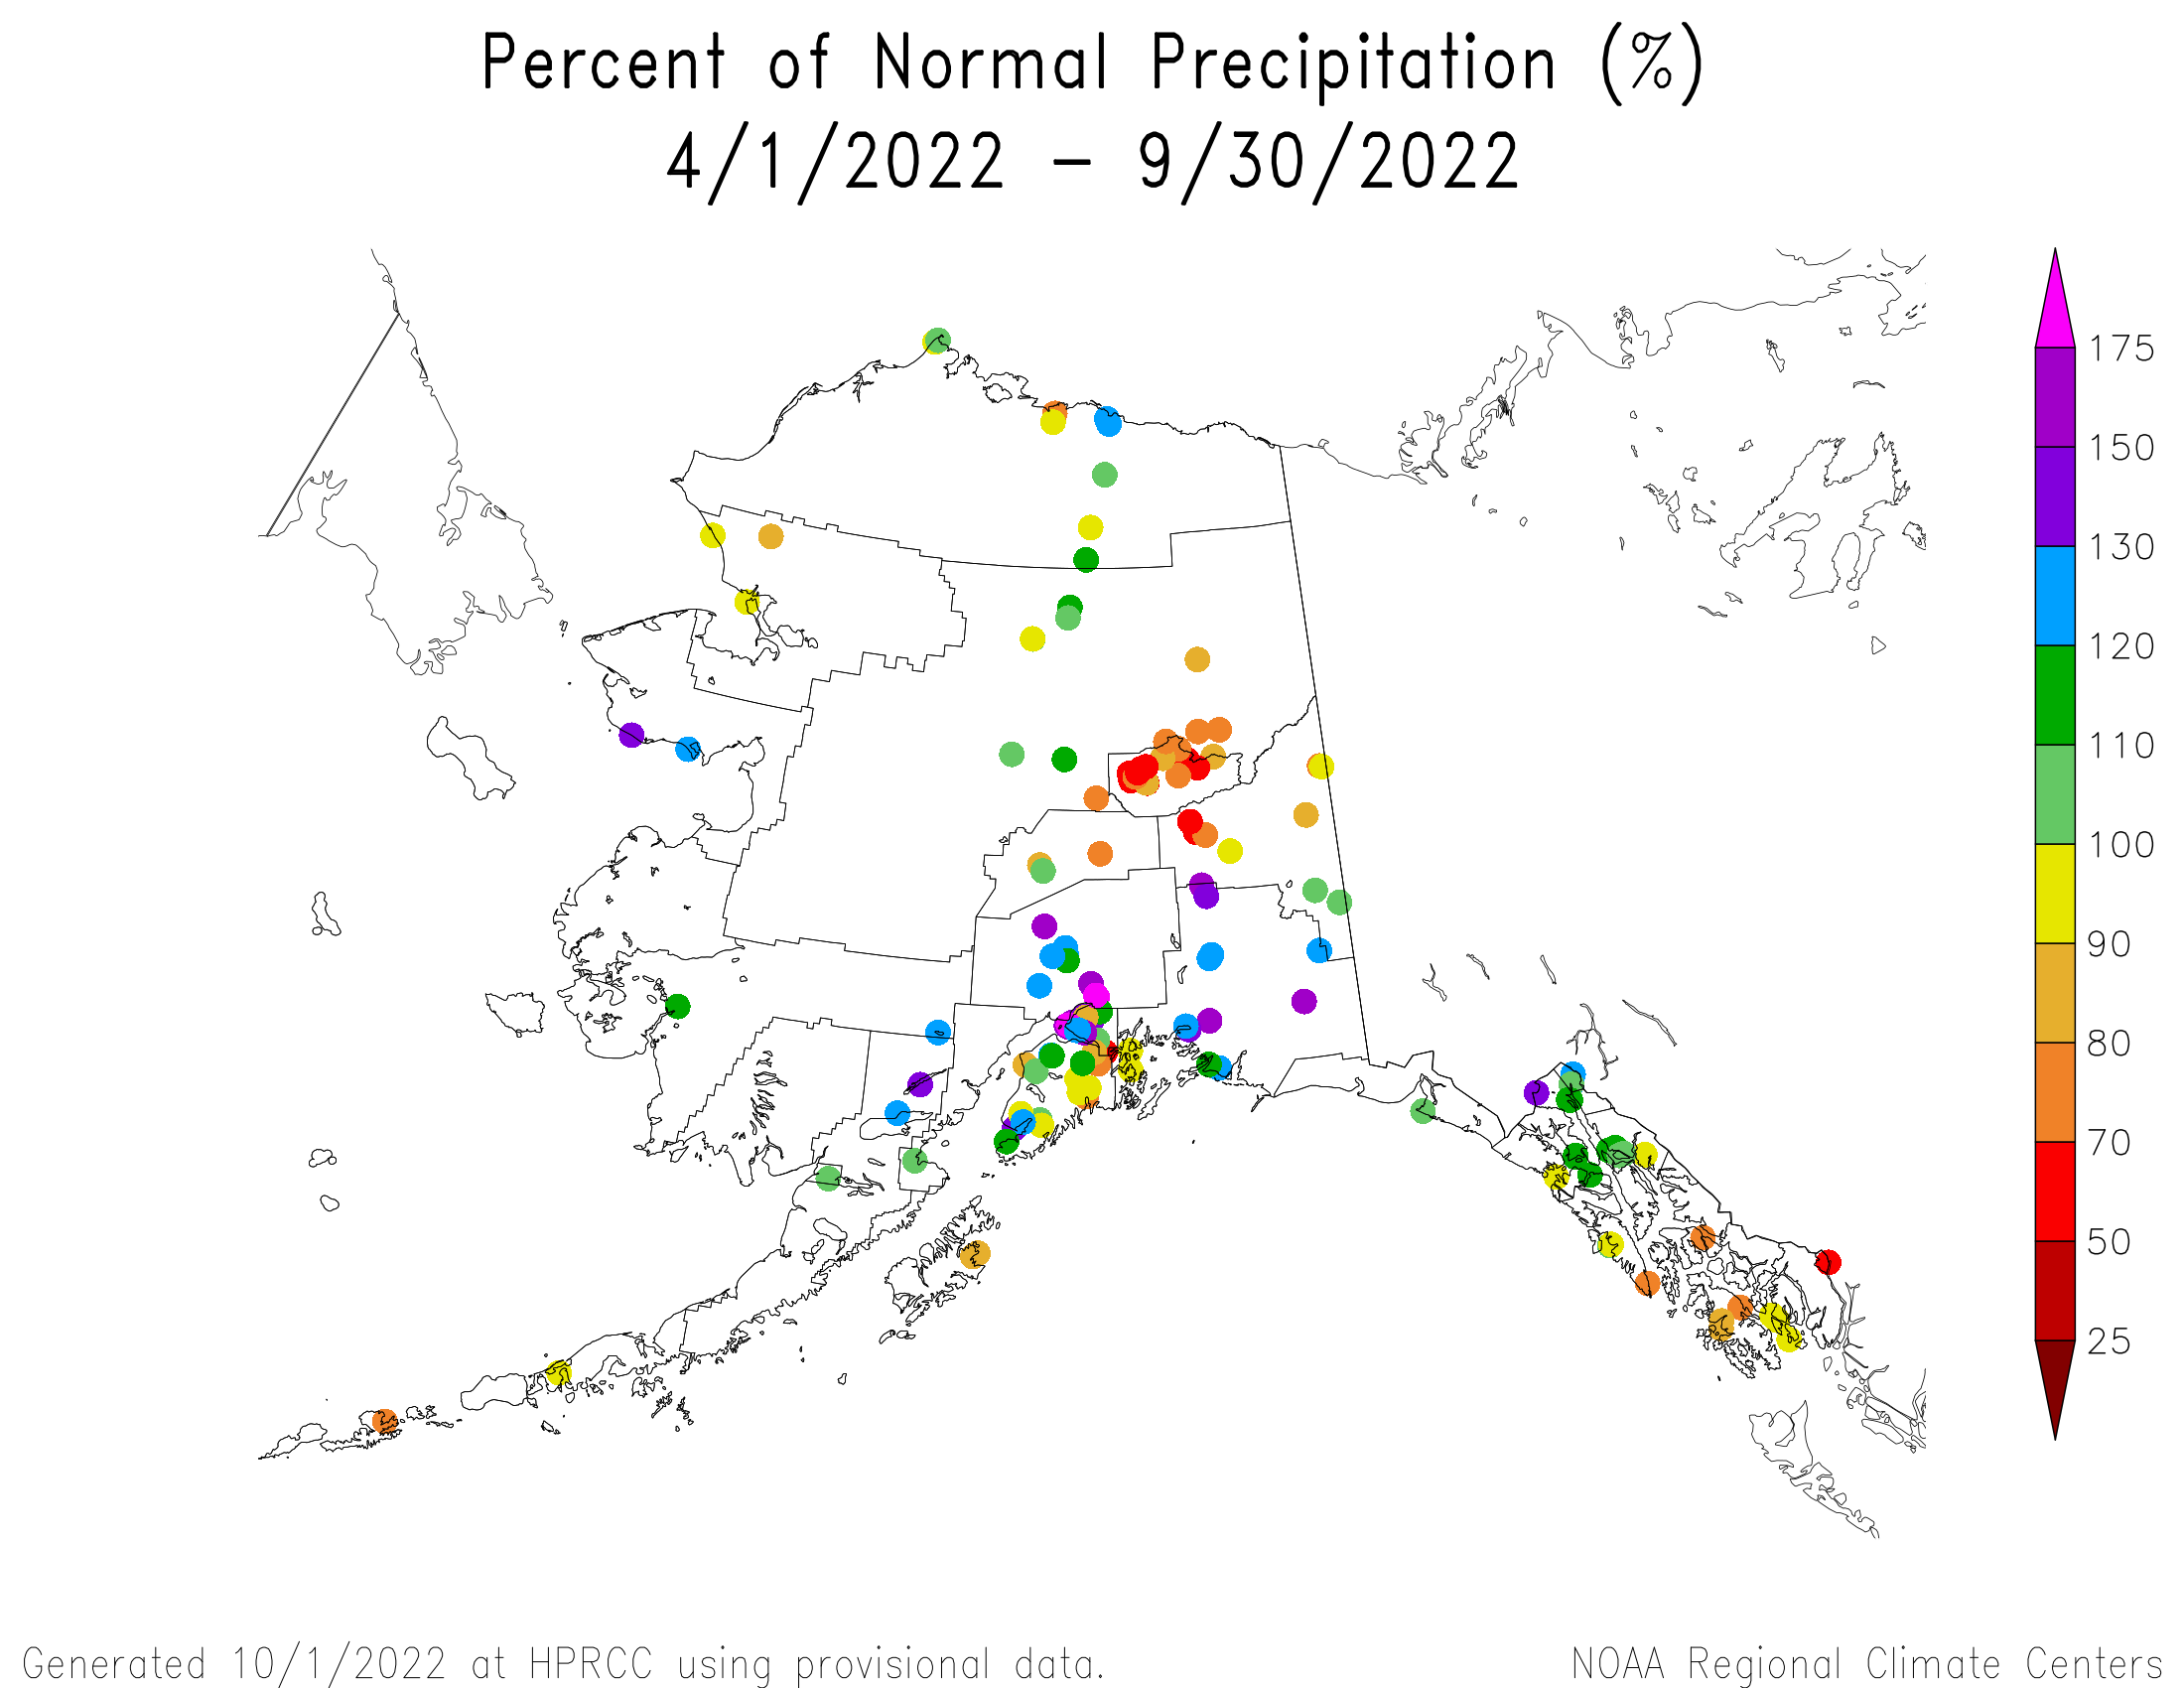 Alaska Percent of Normal Precipitation, April-September 2022